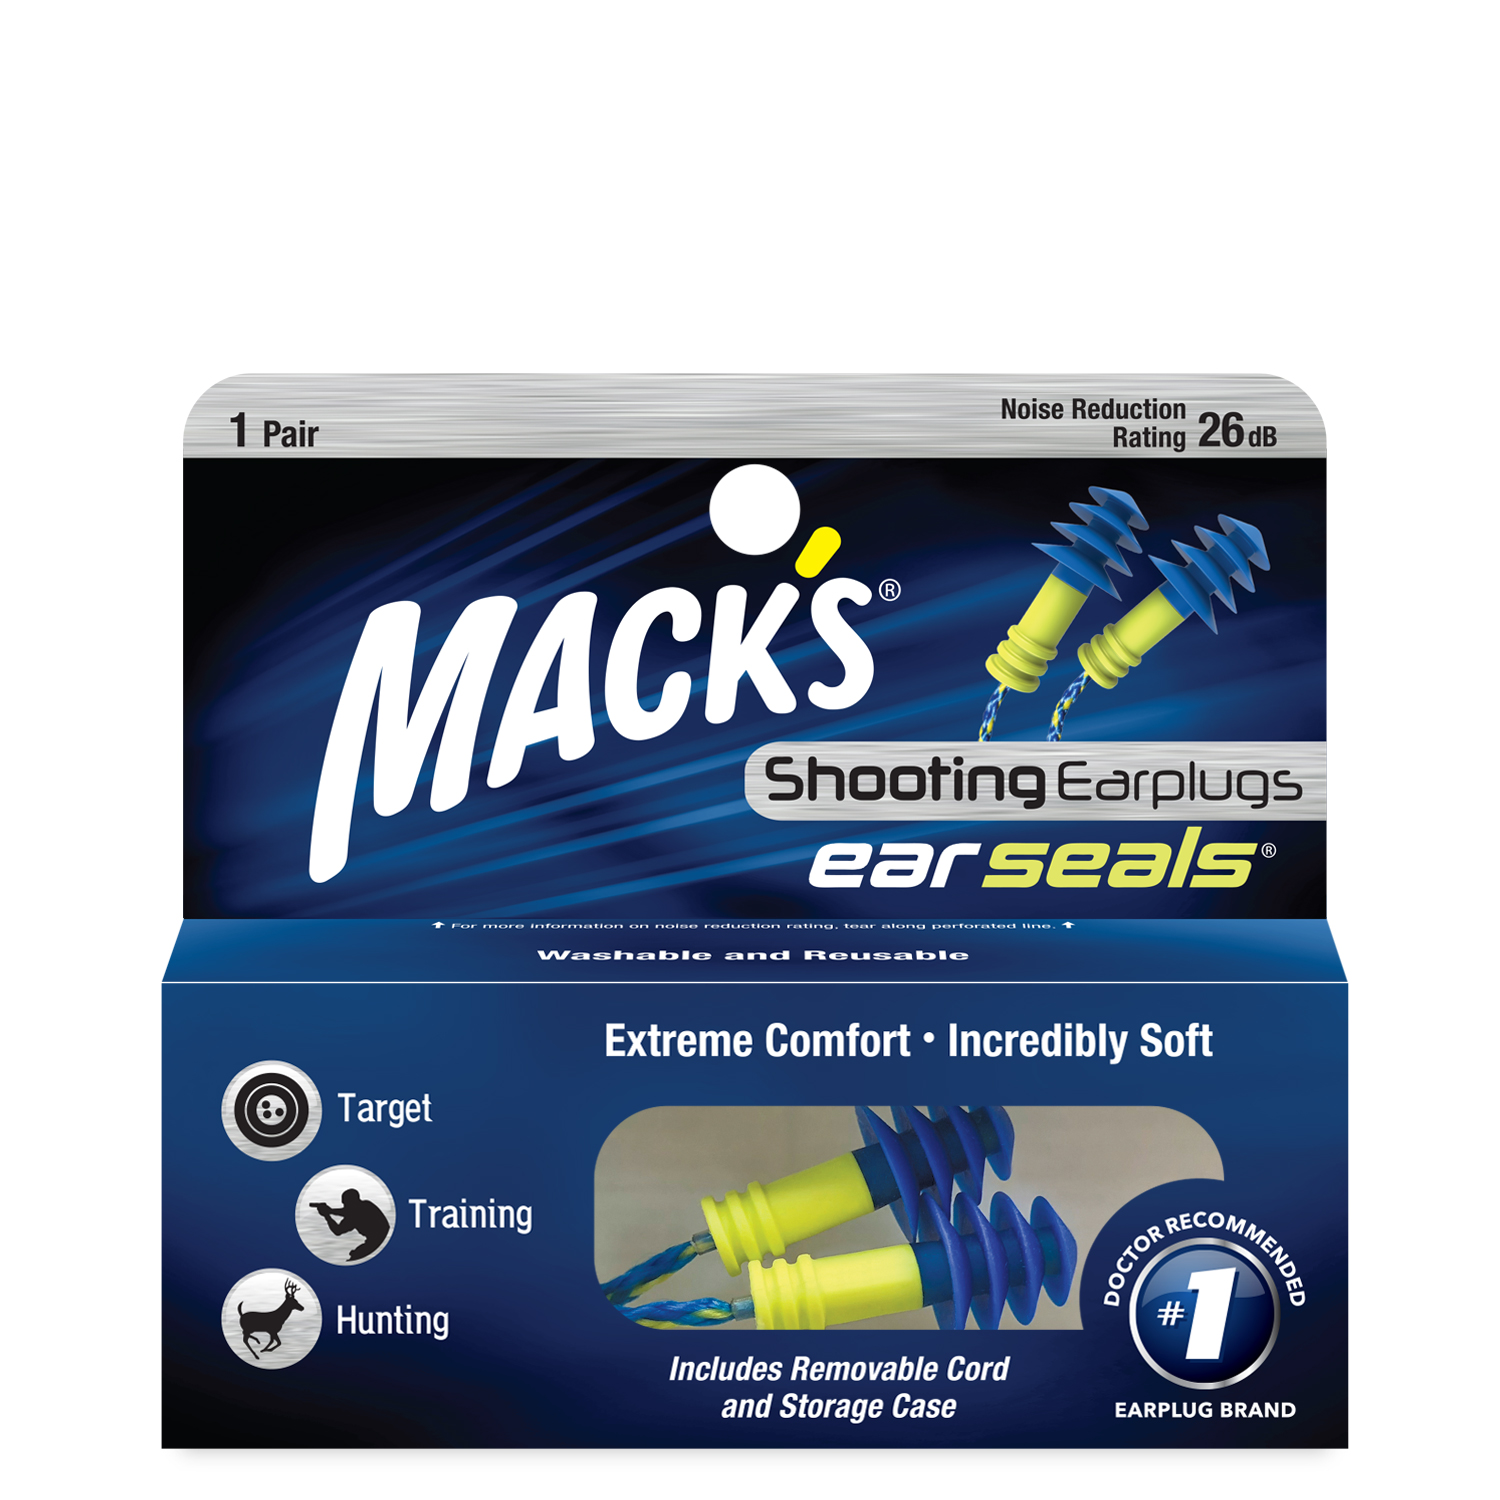 Ear Plugs Aluminum Carrying Case - Mack's Ear Plugs